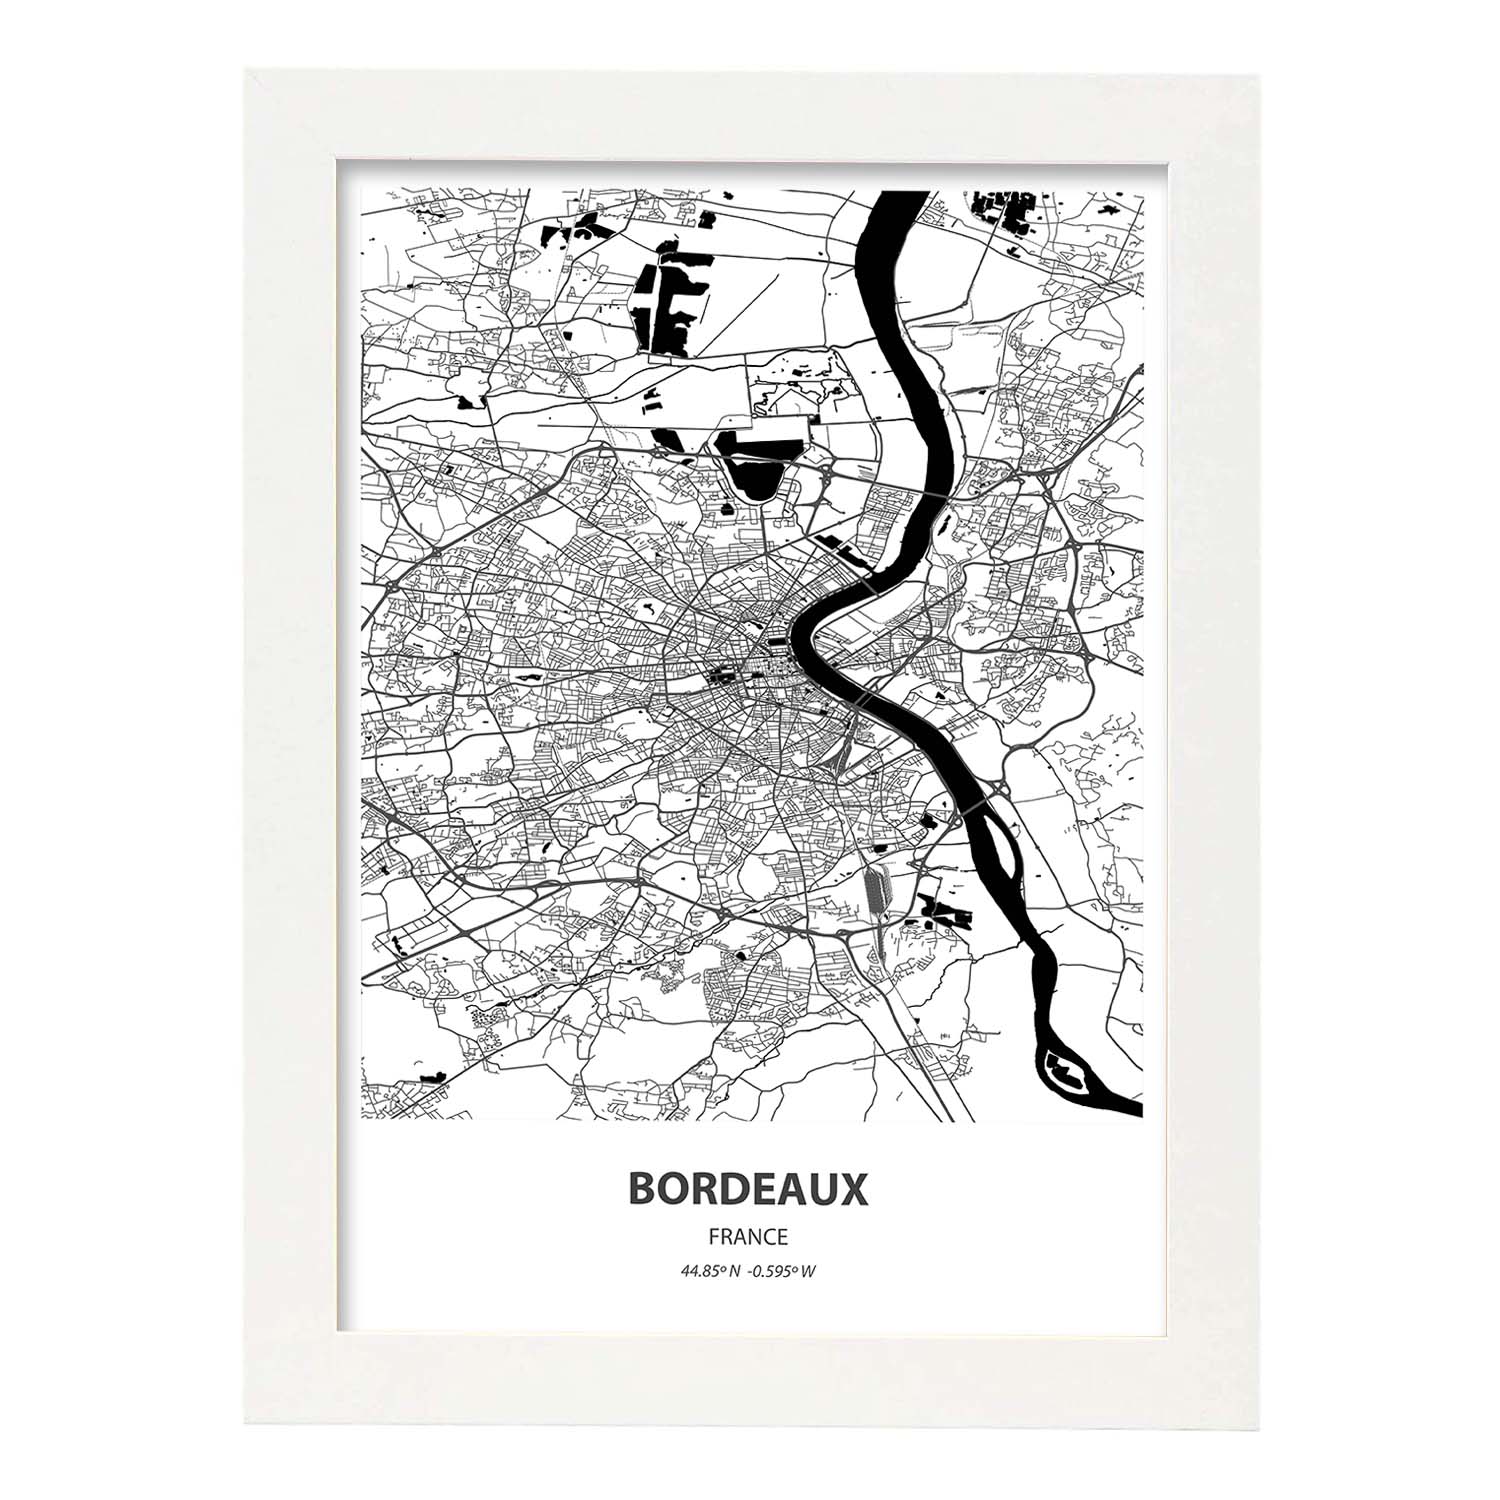 Poster con mapa de Bordeaux - Francia. Láminas de ciudades de Francia con mares y ríos en color negro.-Artwork-Nacnic-A4-Marco Blanco-Nacnic Estudio SL